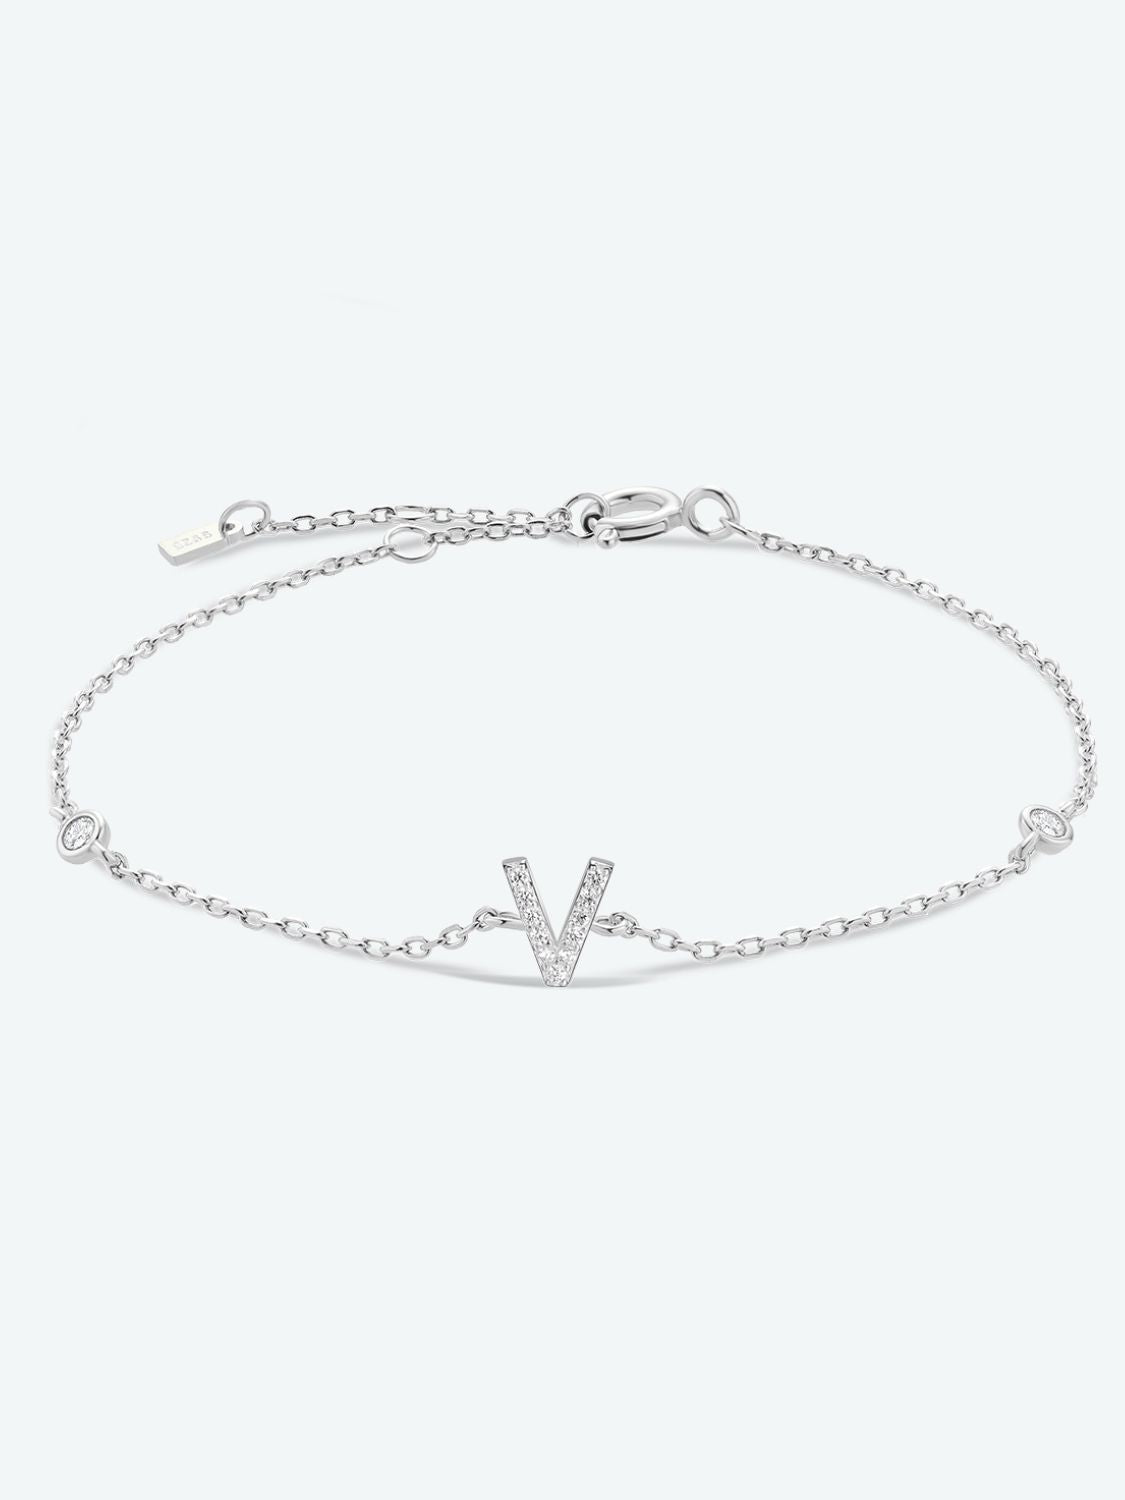 V To Z Zircon 925 Sterling Silver Bracelet - V/Silver / One Size - Women’s Jewelry - Bracelets - 4 - 2024